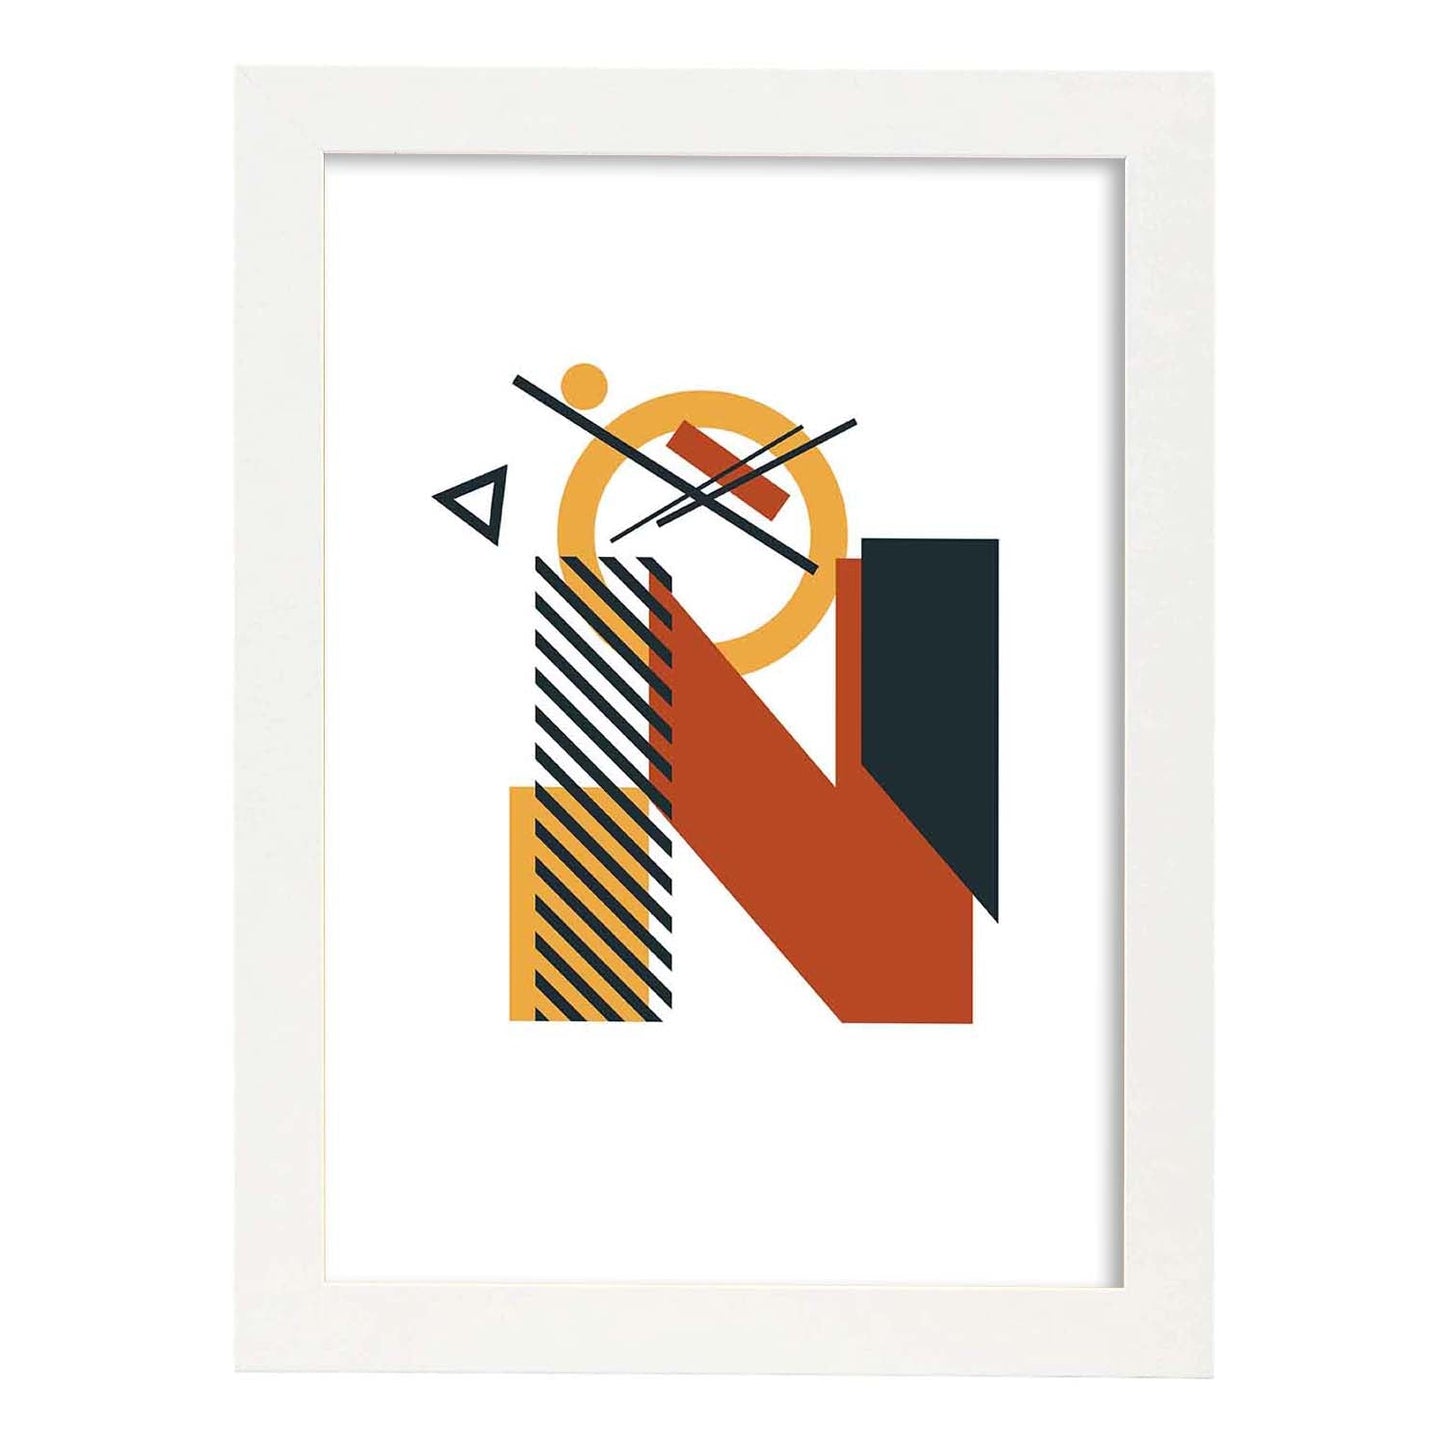 Poster de letra N. Lámina estilo Geometria con formas con imágenes del alfabeto.-Artwork-Nacnic-A4-Marco Blanco-Nacnic Estudio SL